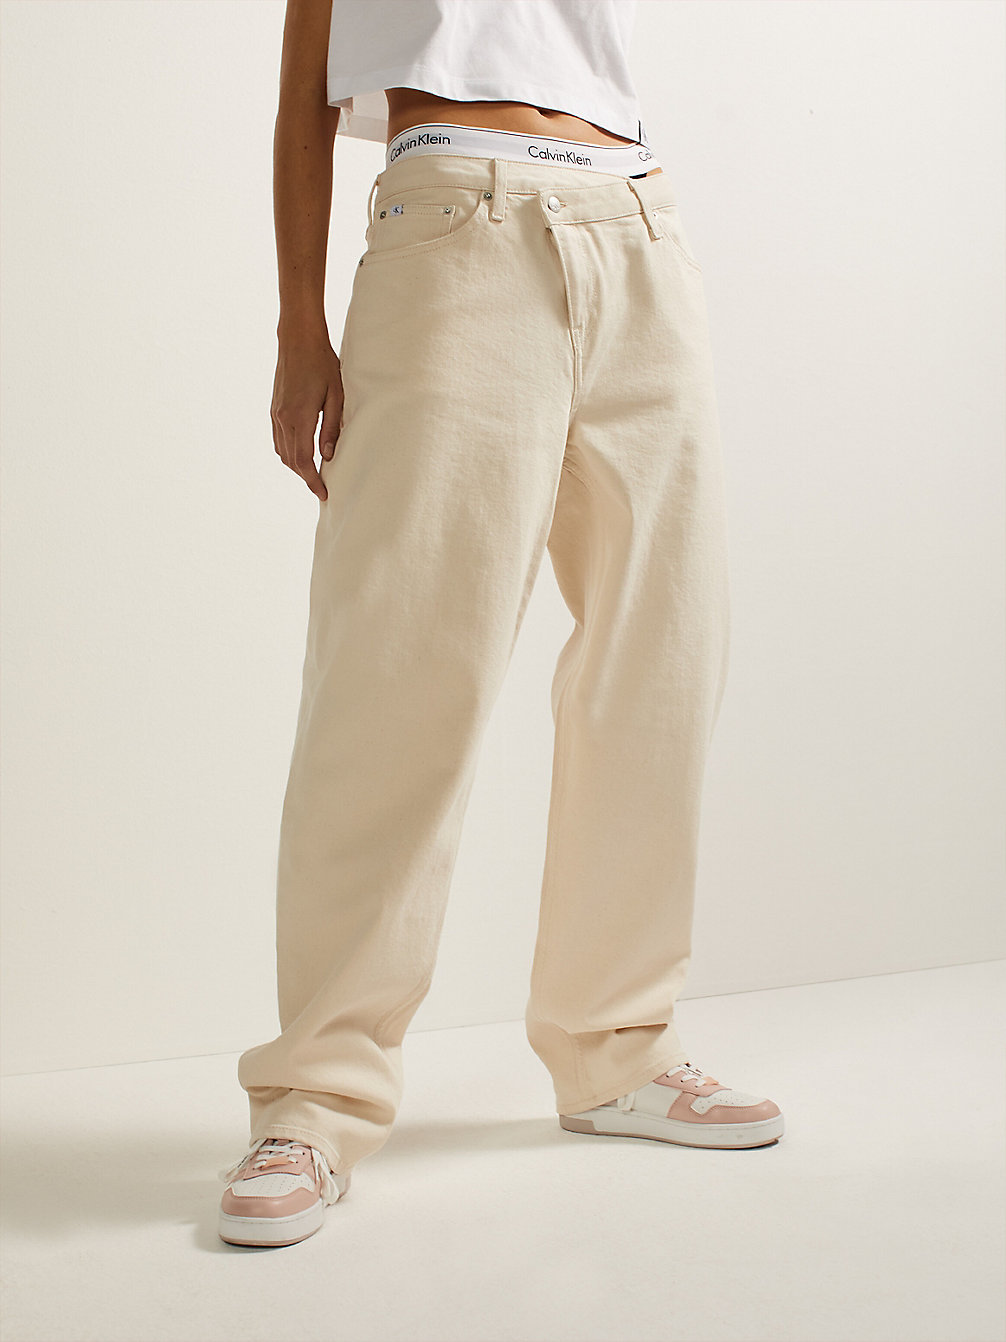 CRESCENT MOON 90's Straight Jeans undefined Damen Calvin Klein